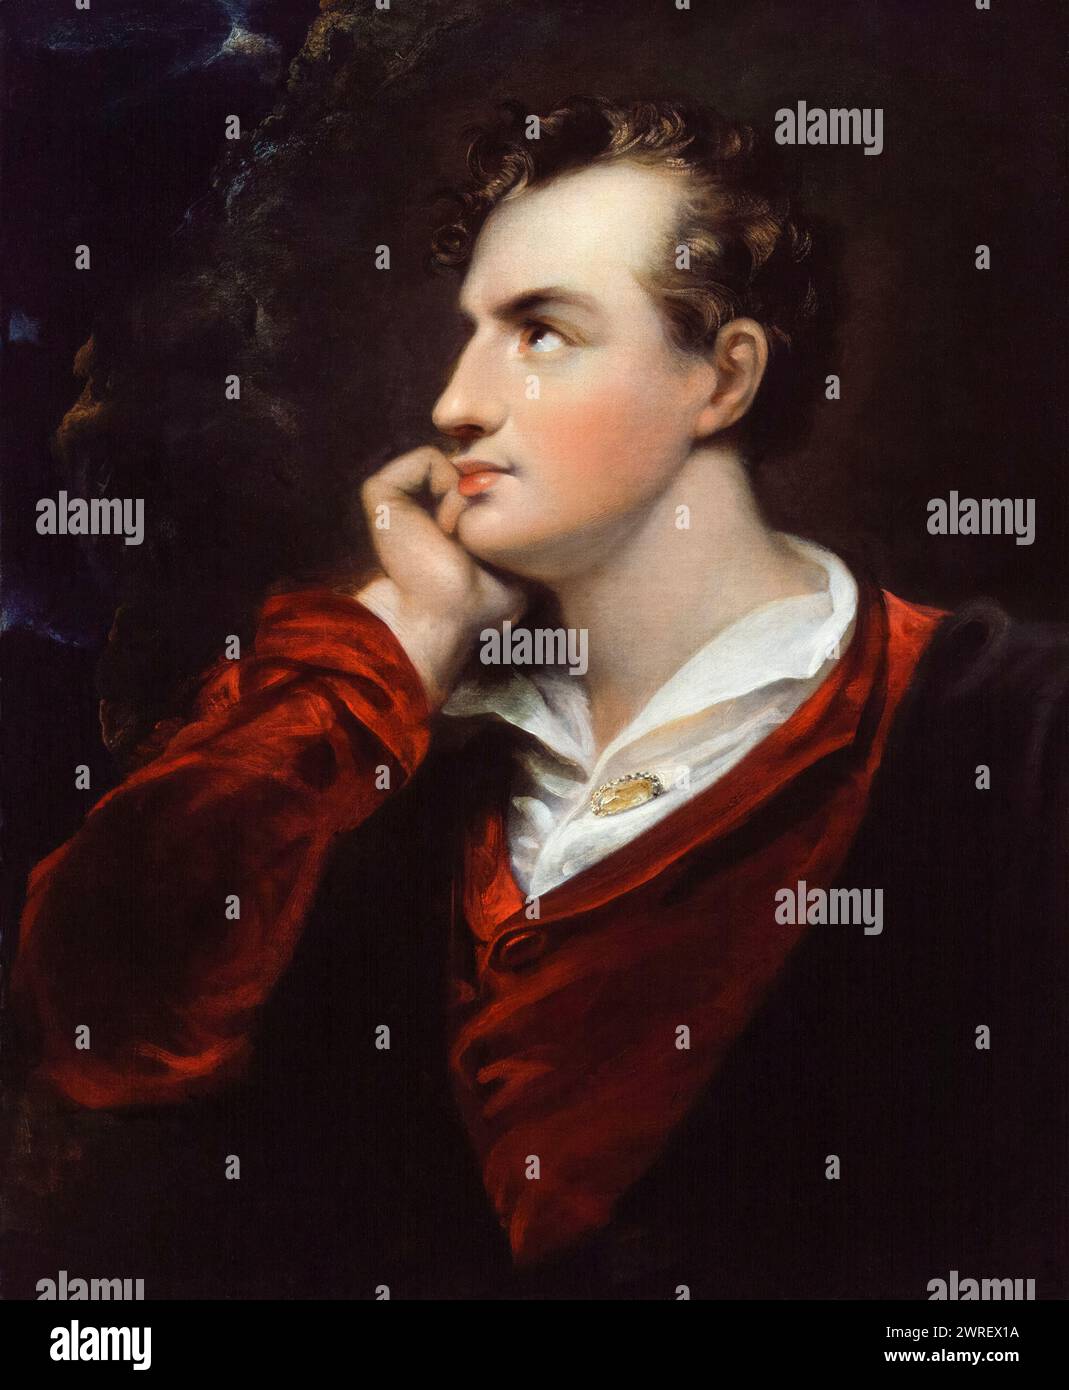 Lord Byron. George Gordon Byron, 6e baron Byron (1788-1824), poète romantique anglais, portrait peint à l'huile sur toile d'après Richard Westall, vers 1813 Banque D'Images